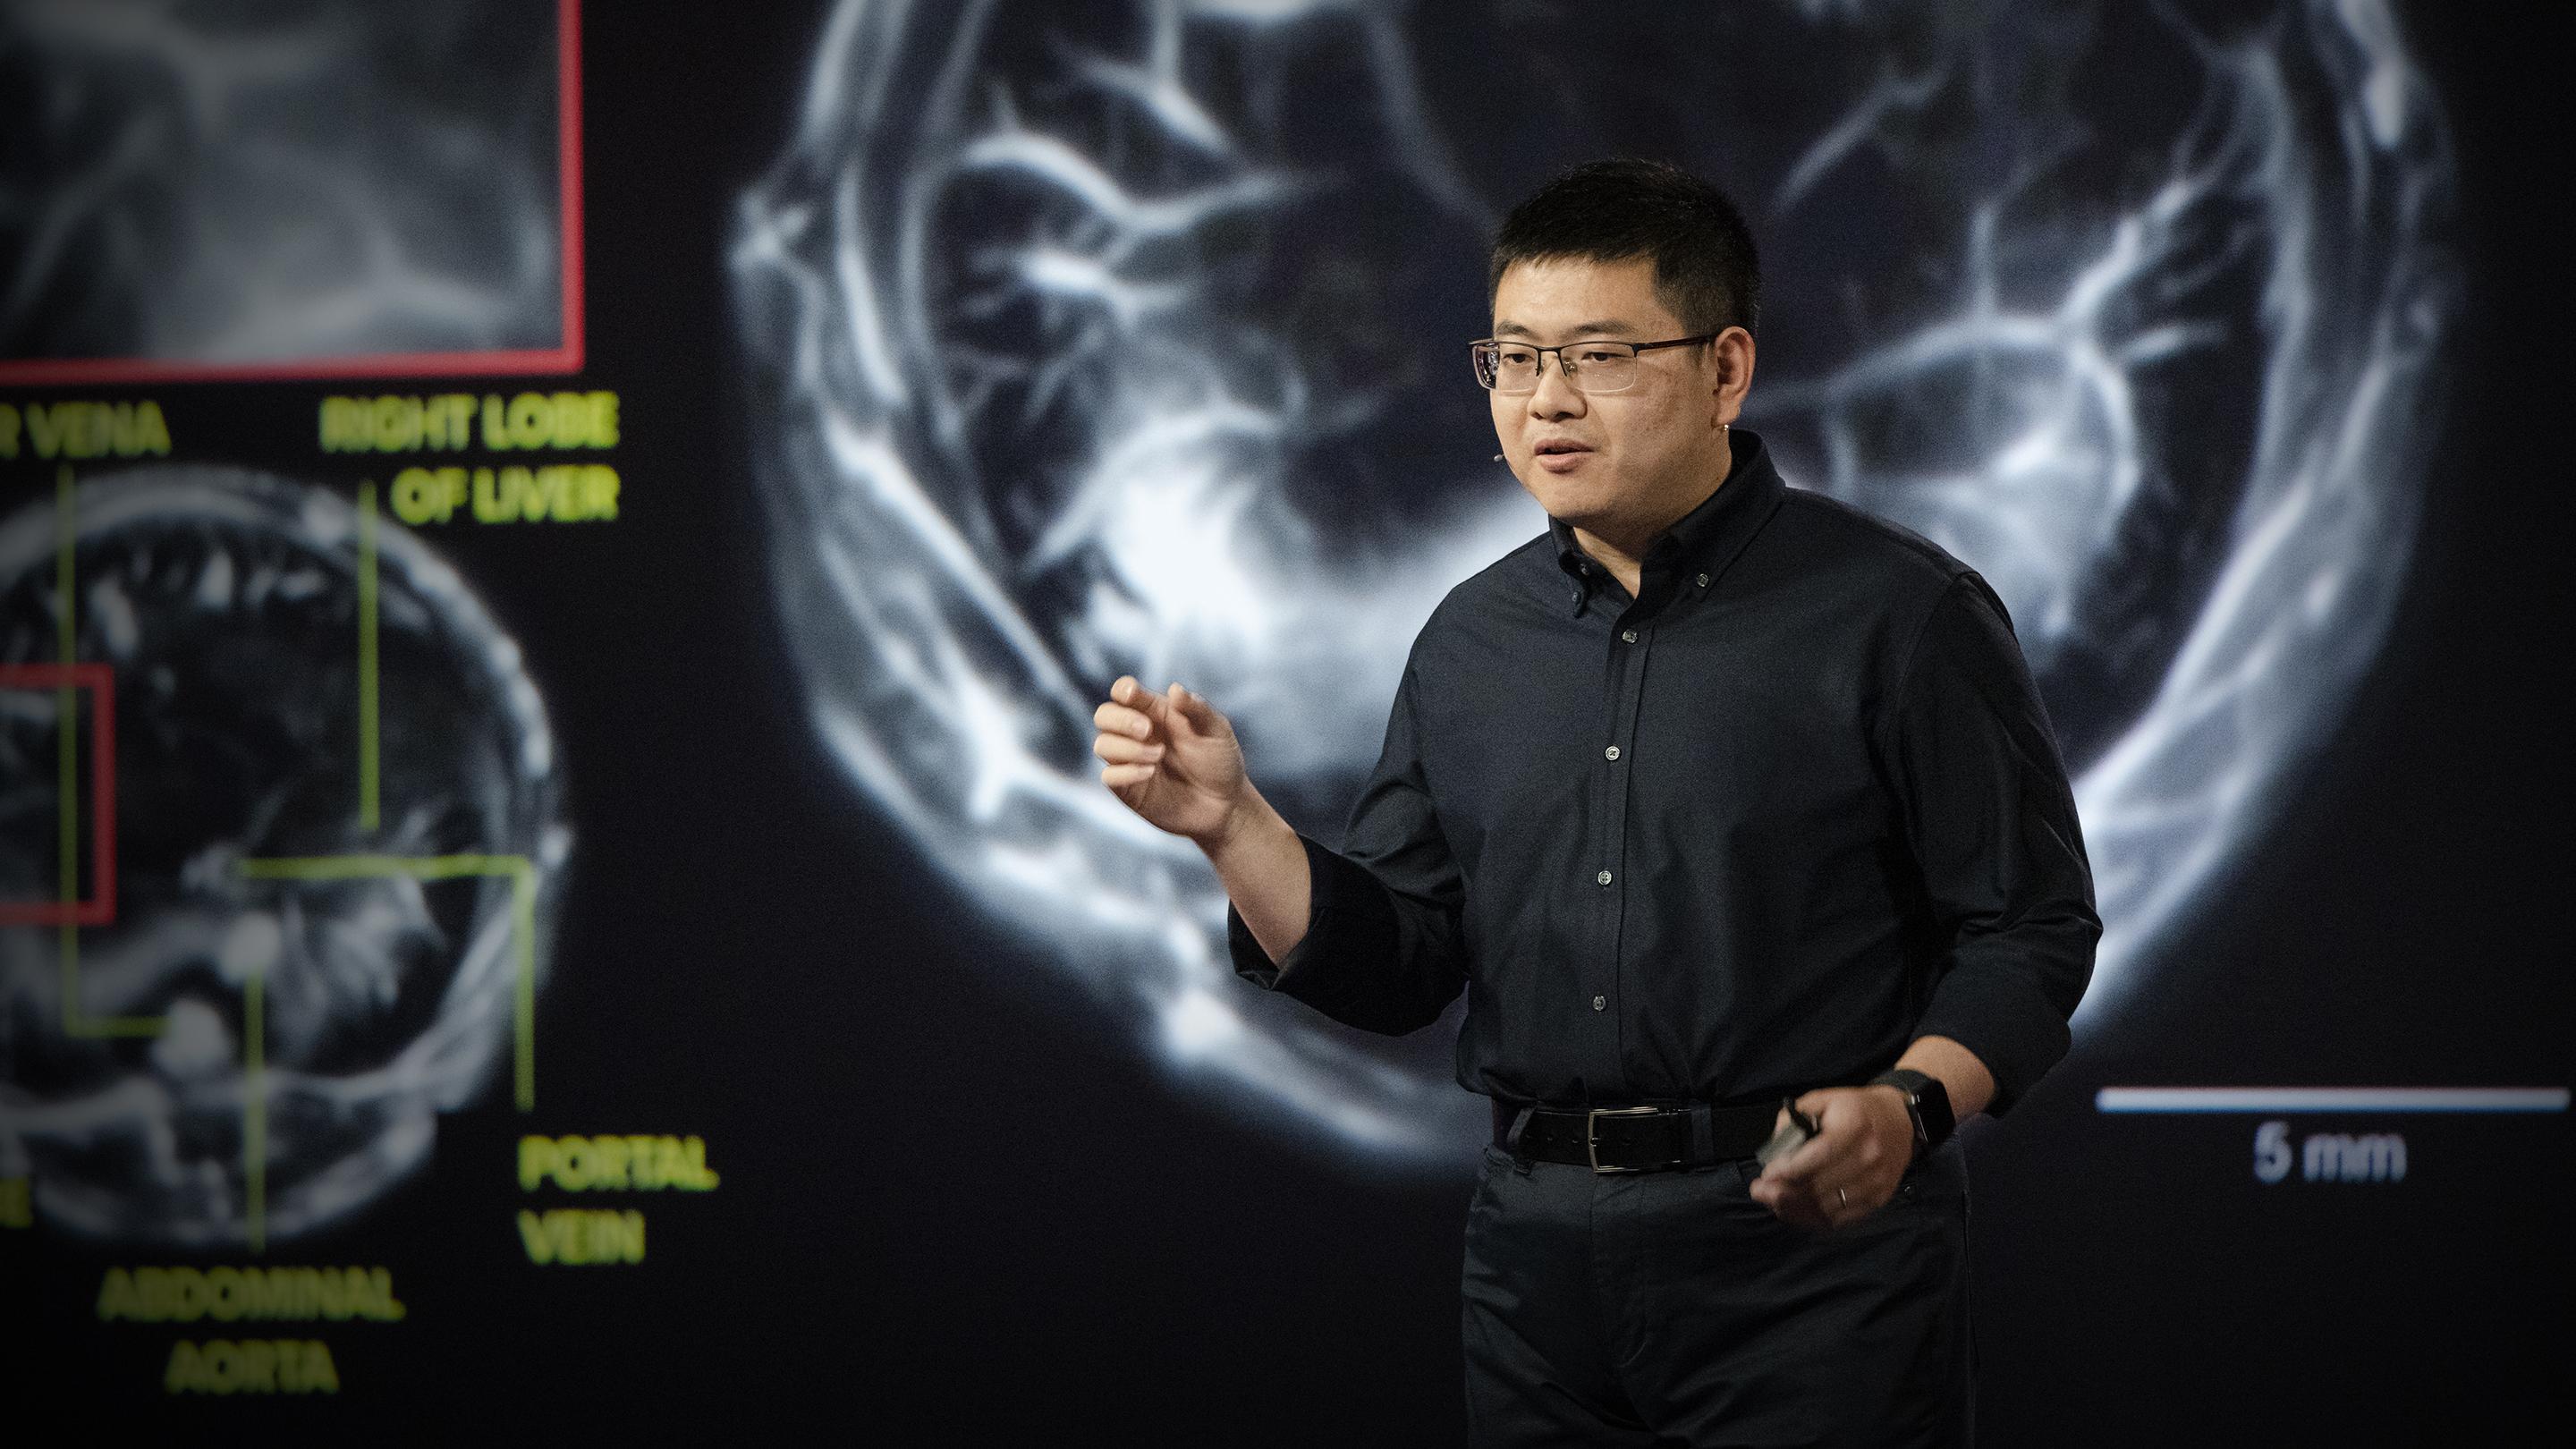 L’incroyable potentiel de l’imagerie photo-acoustique pour détecter le cancer | Lei Li